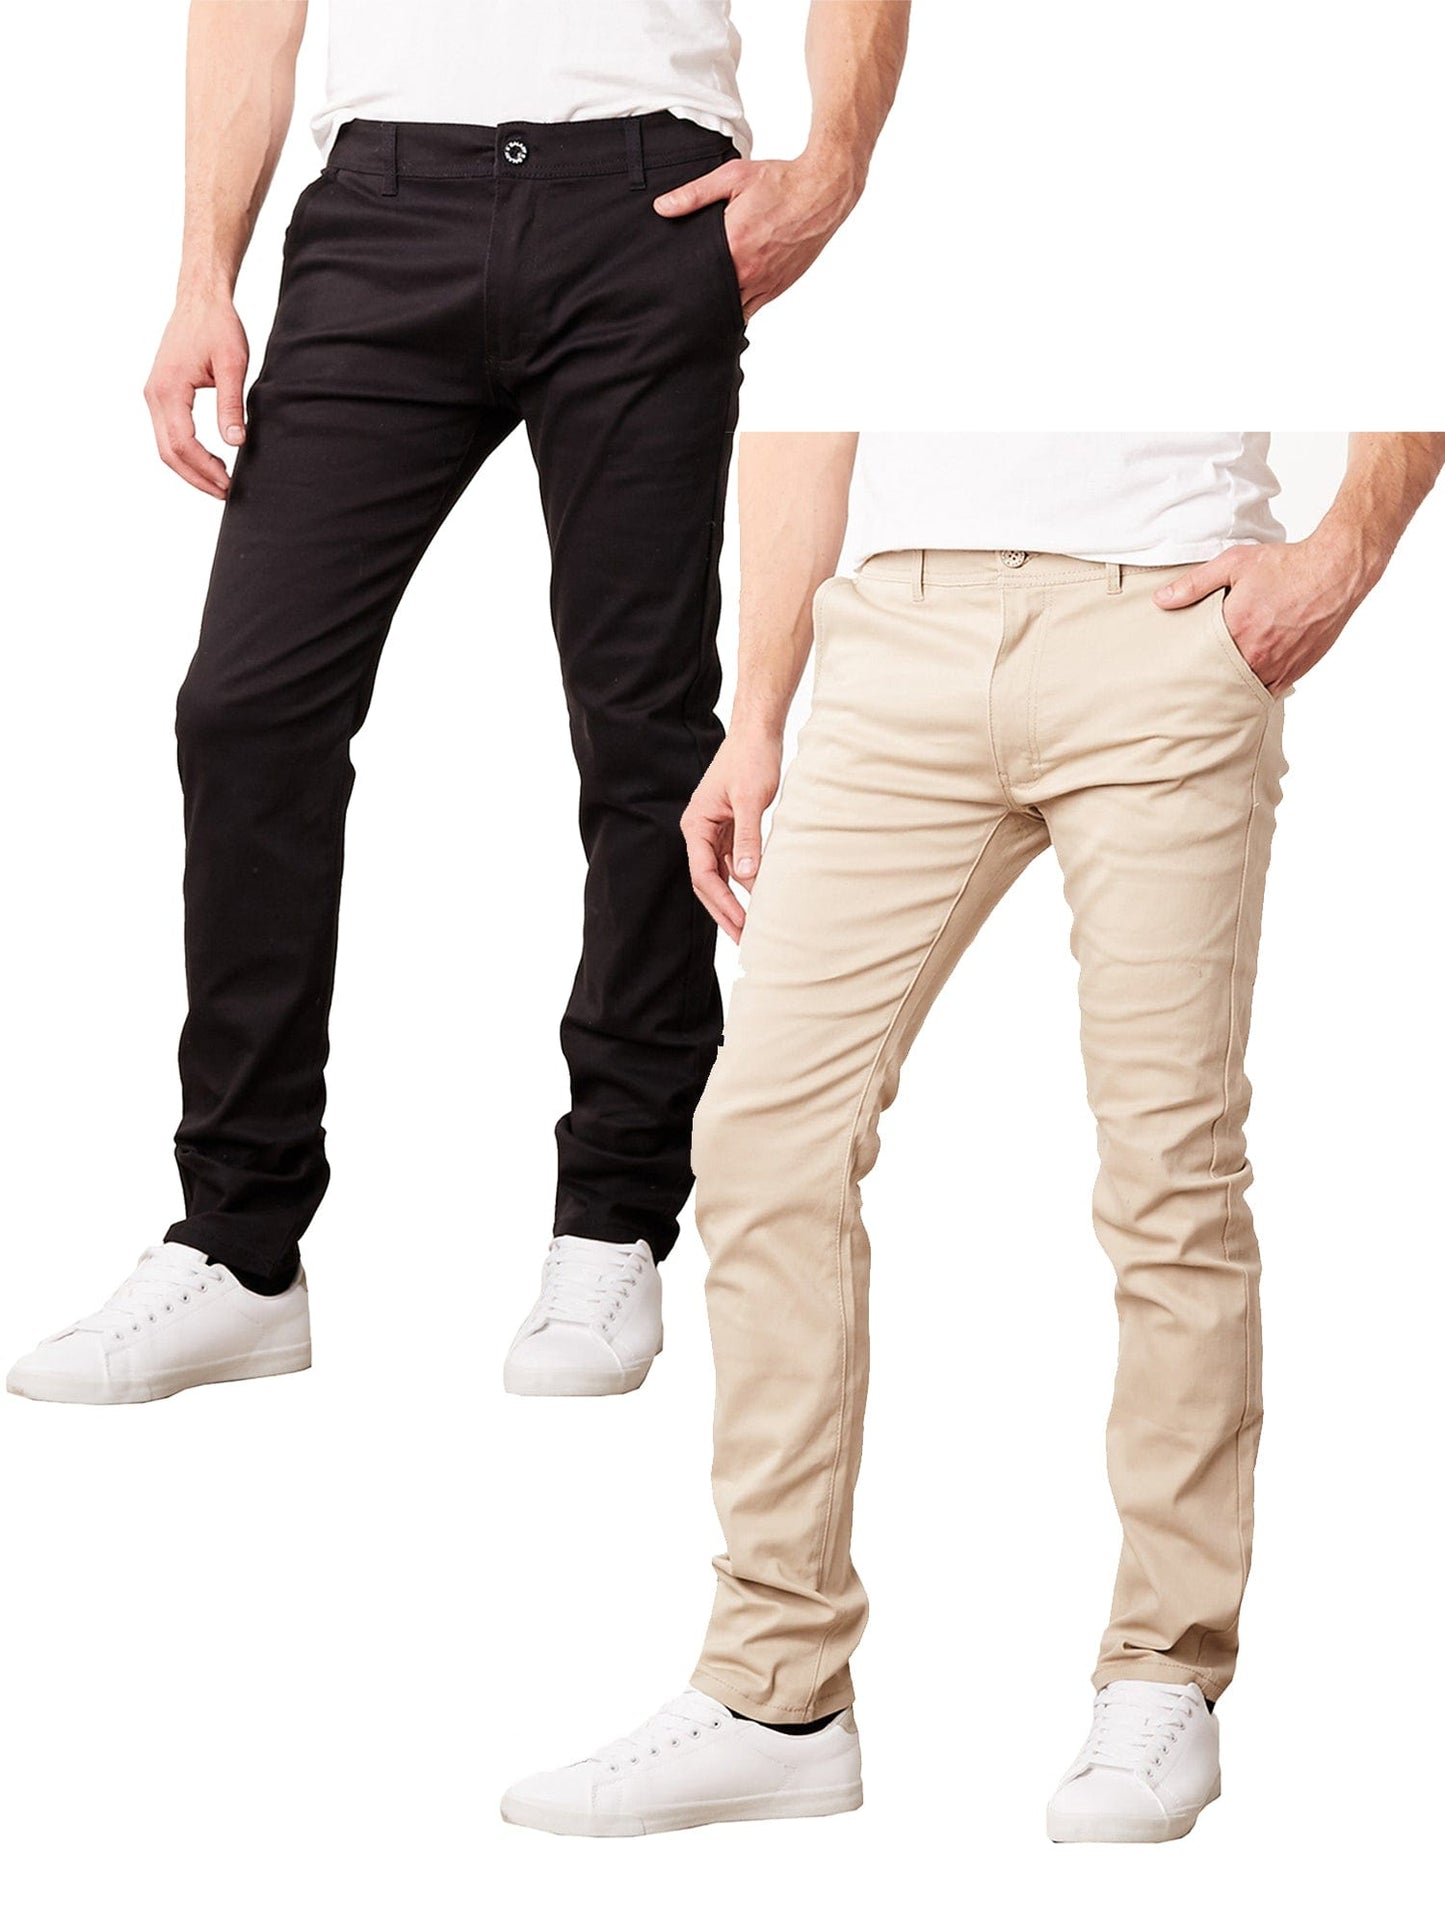 Paquete de 2 pantalones chinos de algodón elásticos y ajustados para uso diario para hombre (entrepierna de 31") 